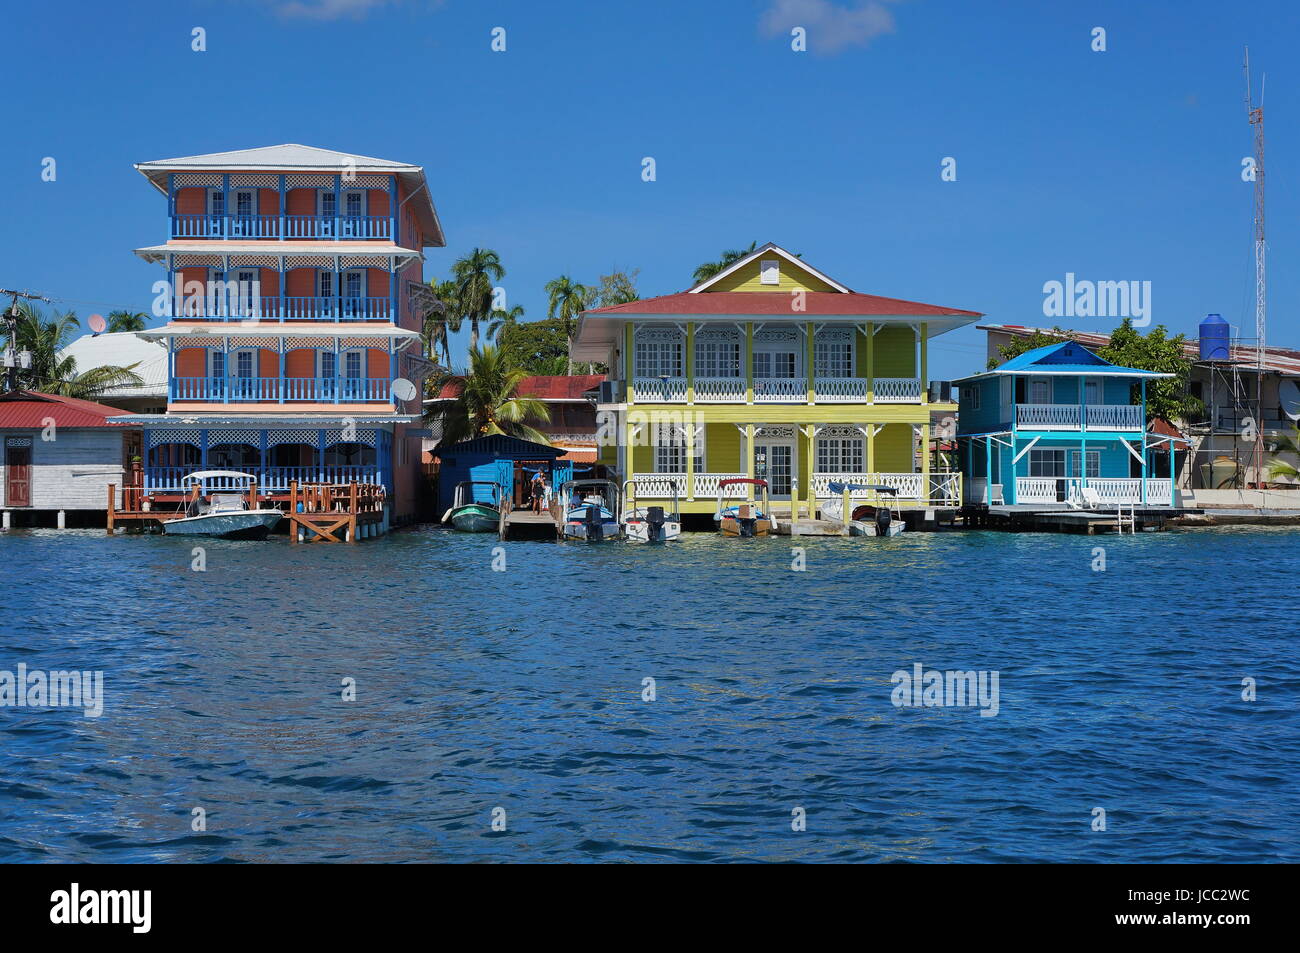 Bunte Uferpromenade kolonialen Häuser über dem Meer mit Booten am Dock, Doppelpunkt-Insel, Bocas del Toro, karibische Küste von Panama, Mittelamerika Stockfoto